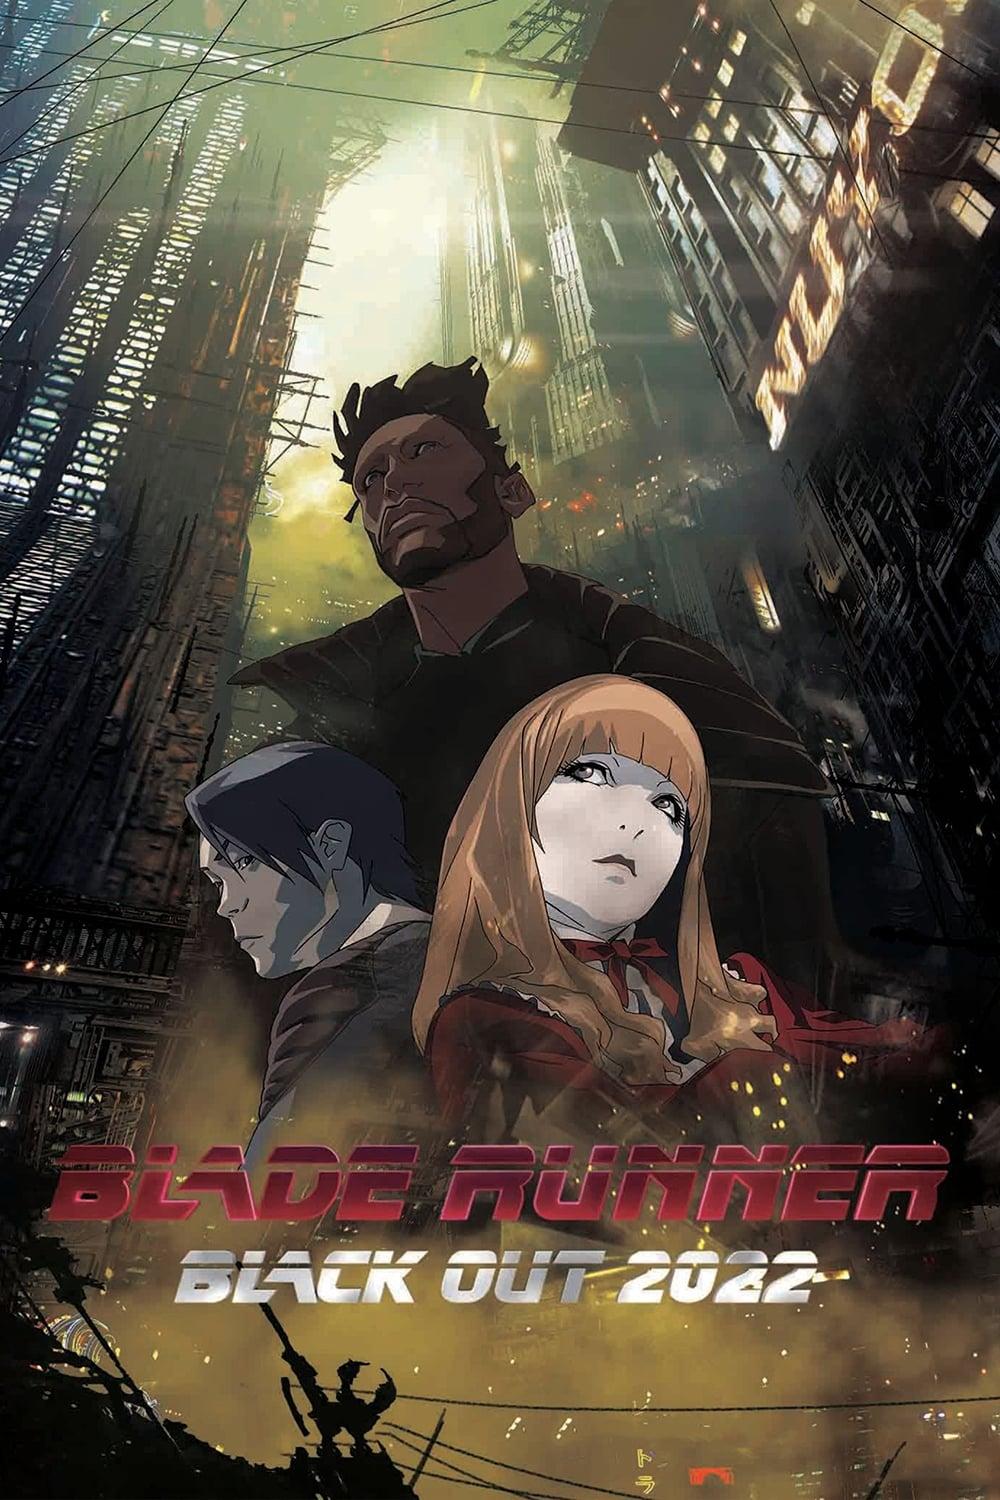 Blade Runner 2022 - Blackout poster